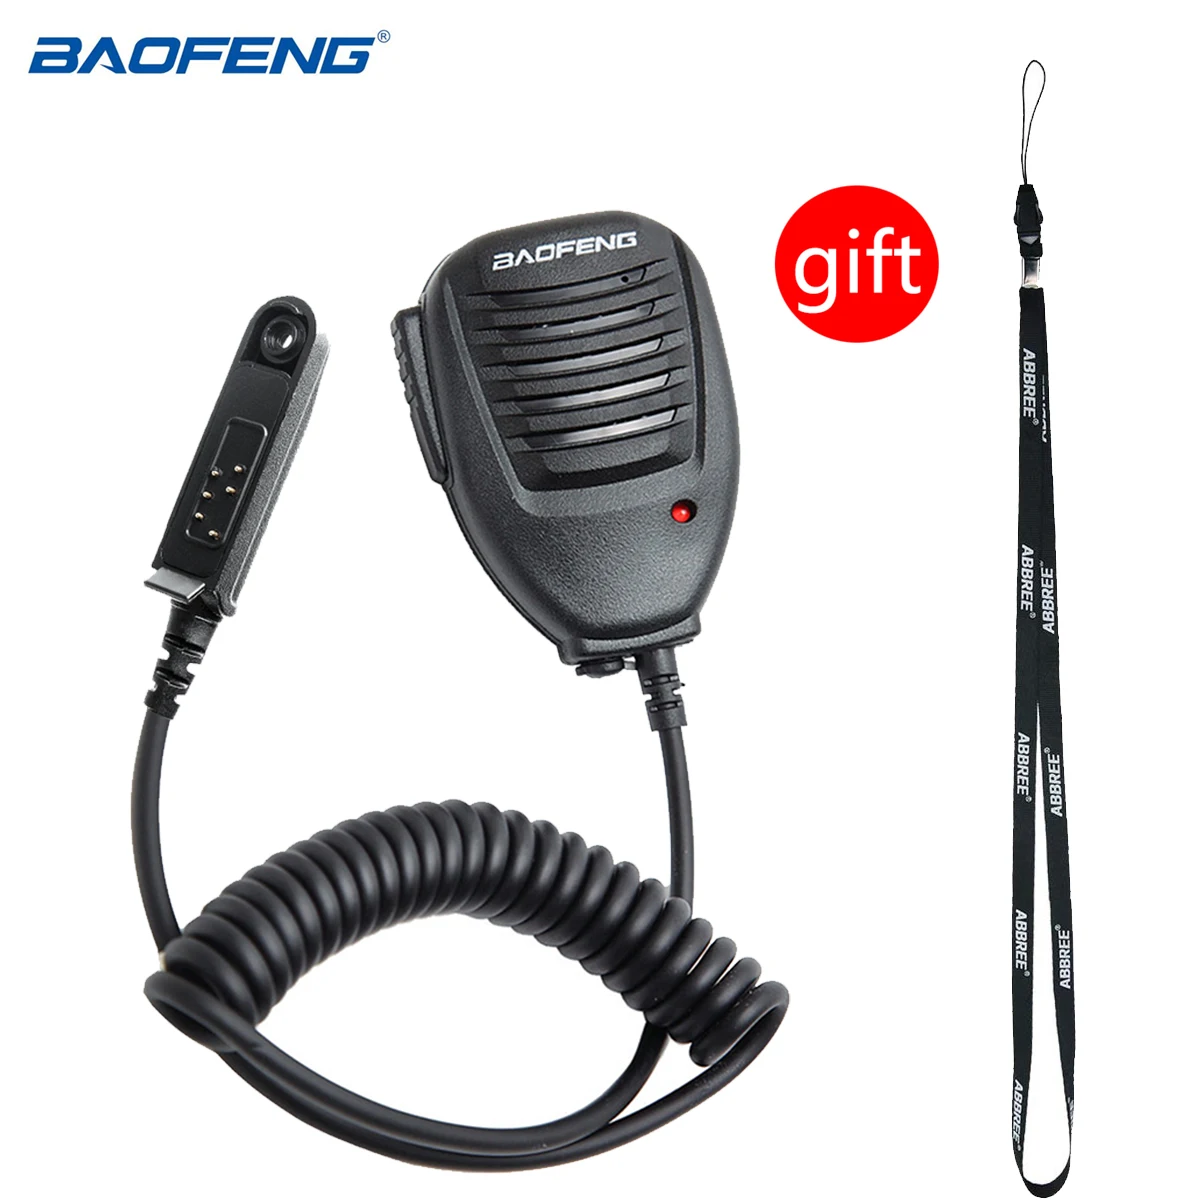 מקורי Baofeng עמיד במים רמקול מיקרופון עבור BaoFeng UV-9R בנוסף UV-XR BF-9700 A-58 GT-3WP עמיד למים מכשיר קשר רדיו . ' - ' . 0